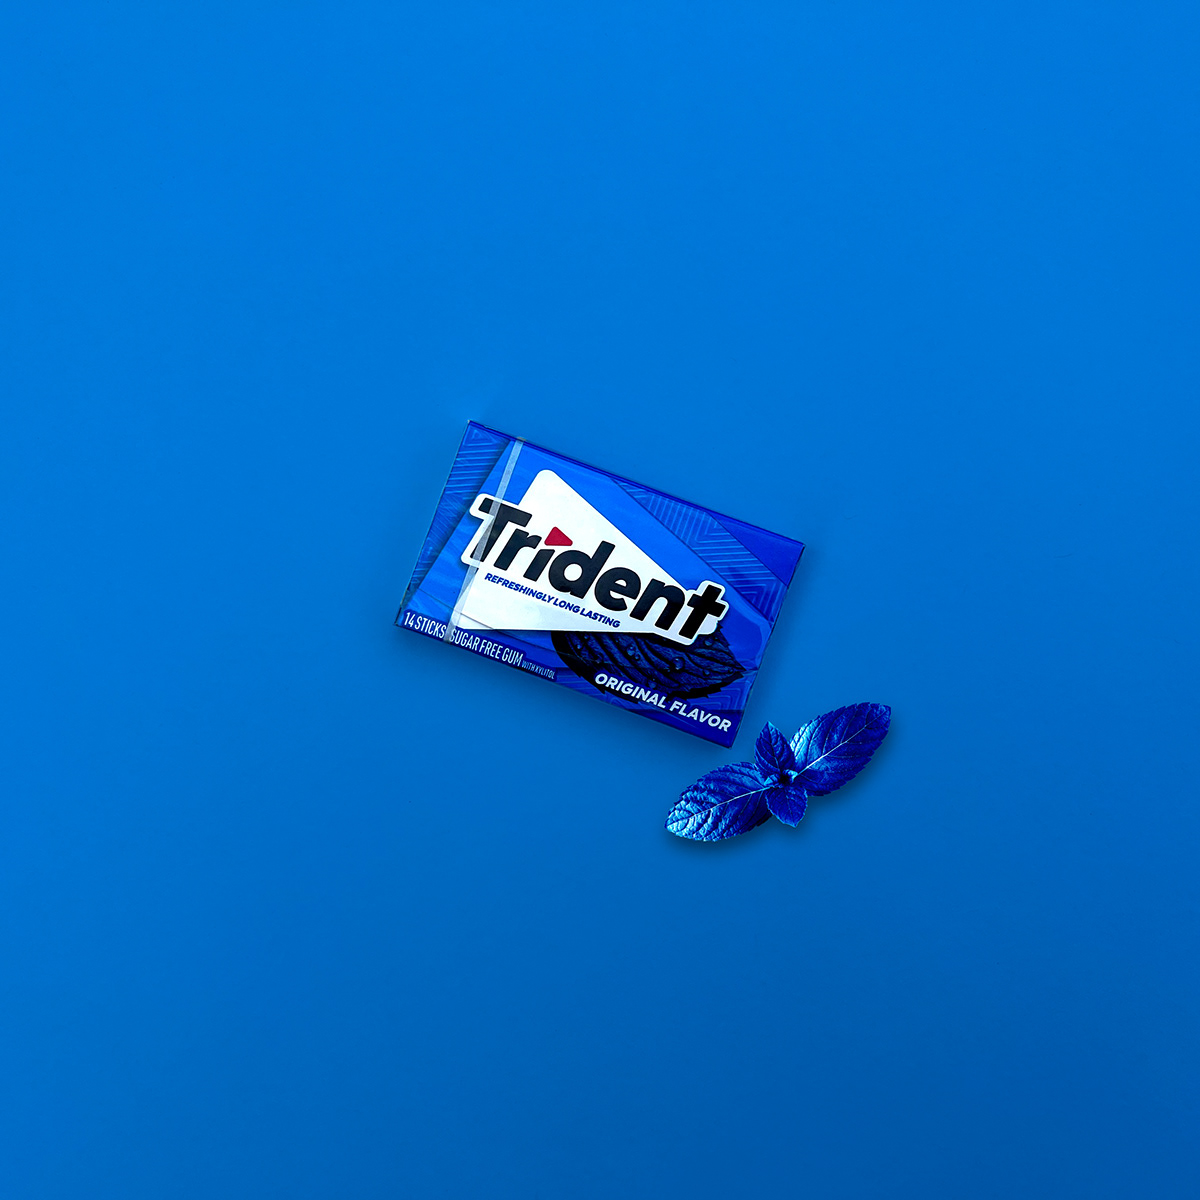 Trident Gum Trident gum Packaging product design  Advertising 